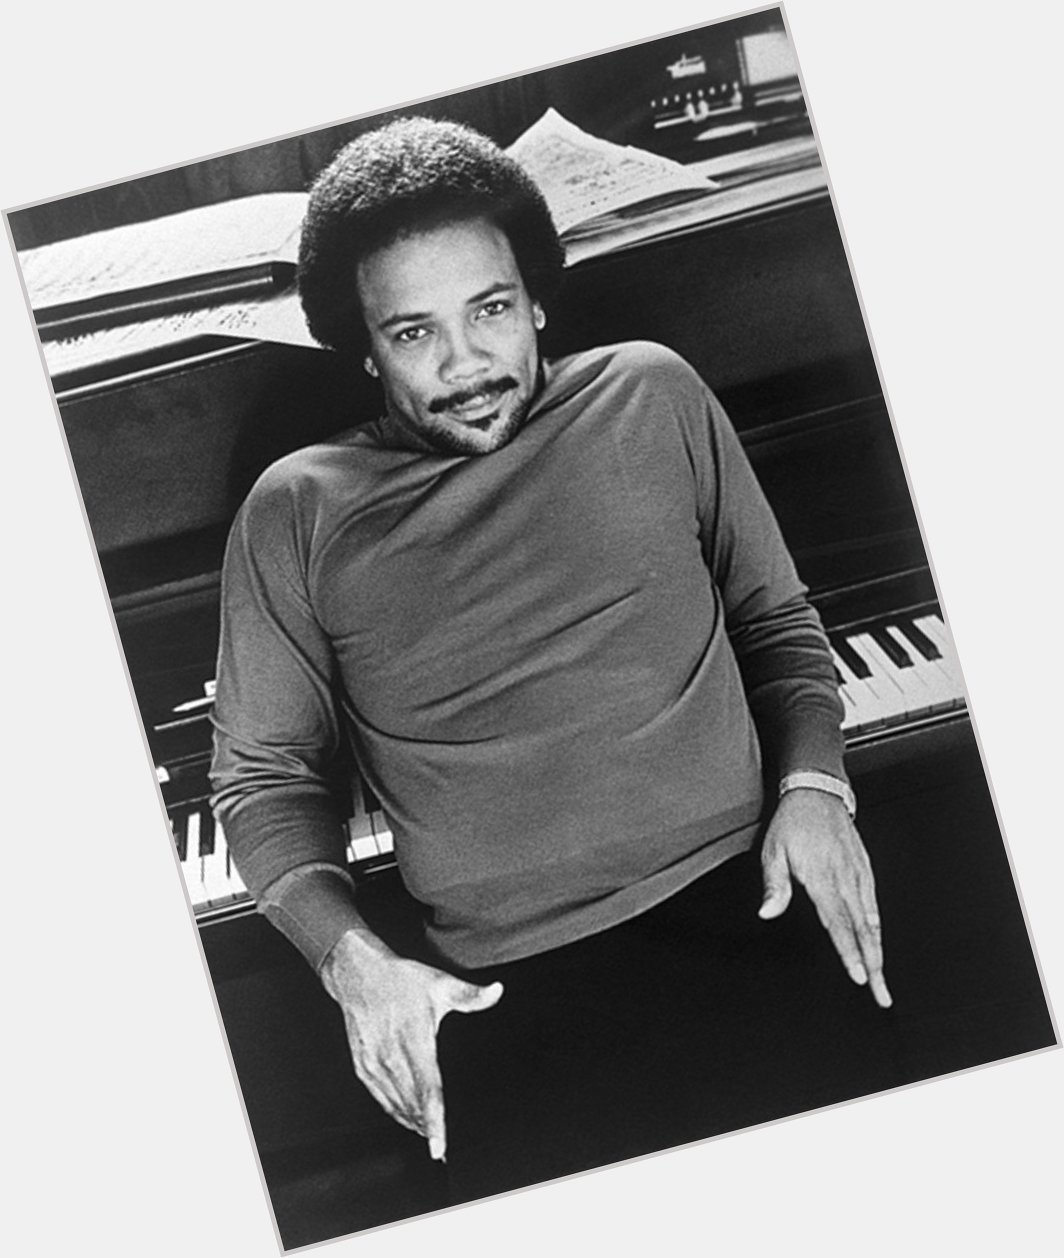 Happy 86th birthday to Quincy Jones! 